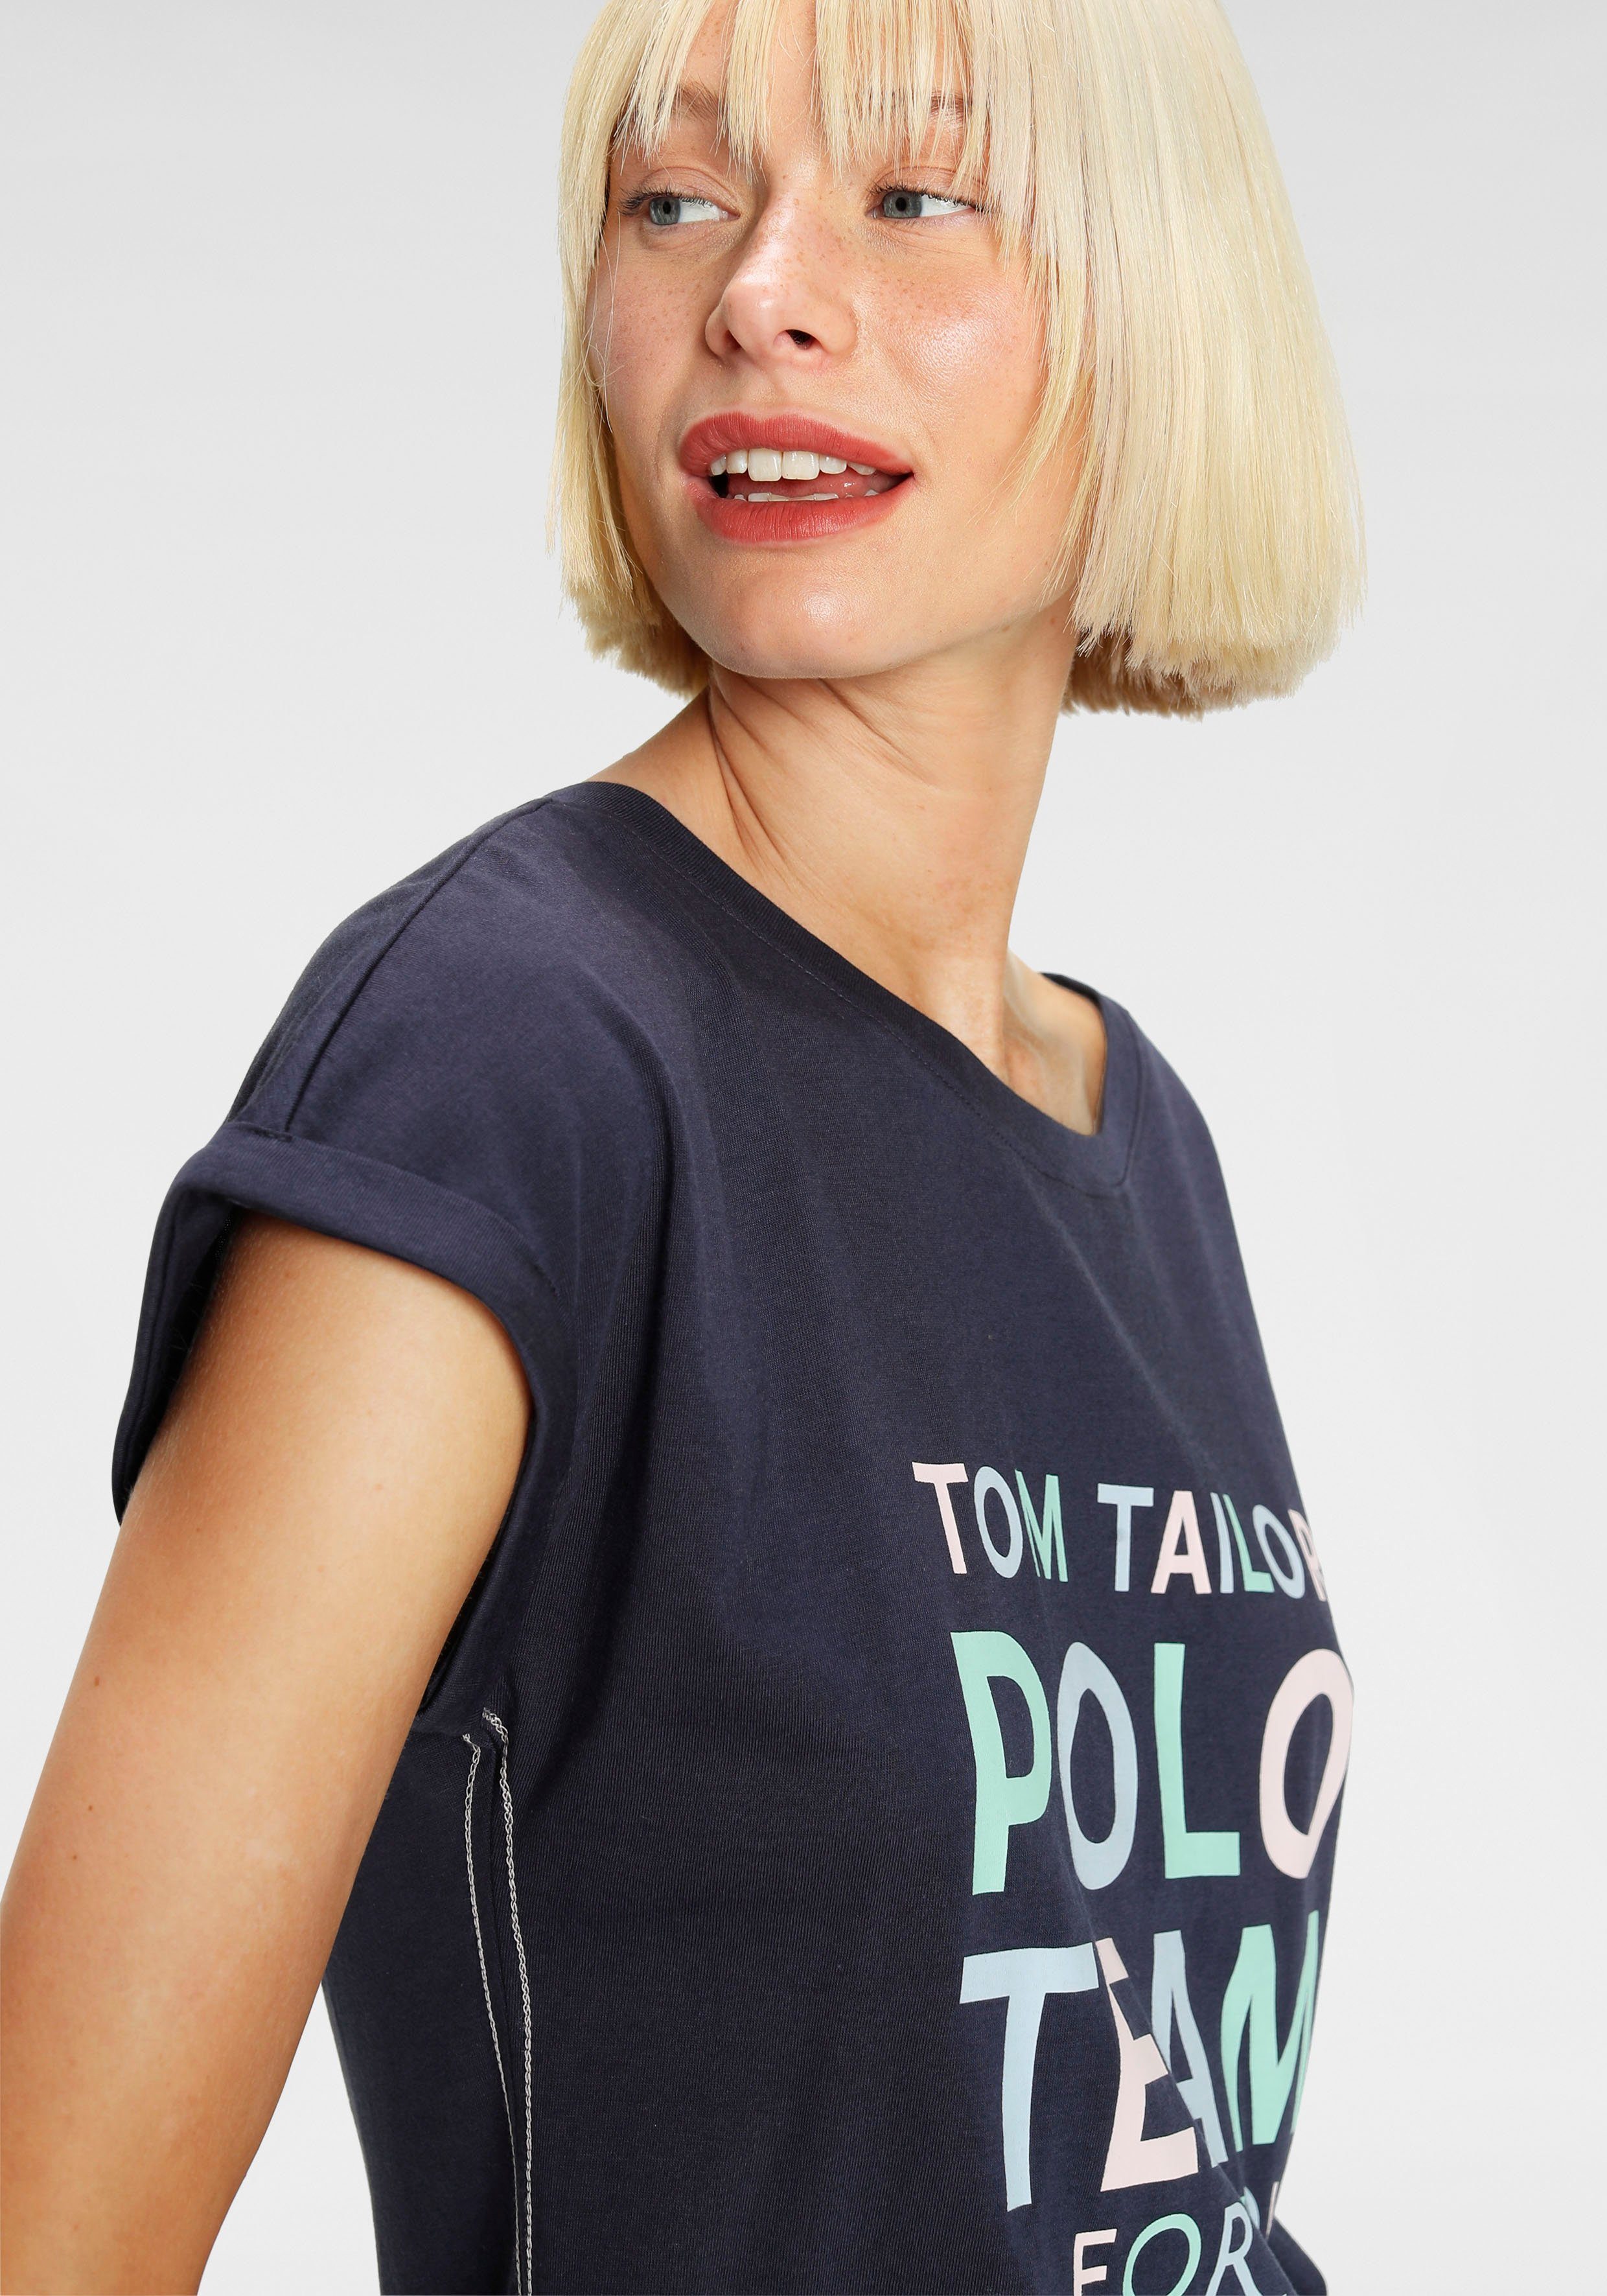 TOM TAILOR farbenfrohen Team Polo Logo-Print großem Print-Shirt